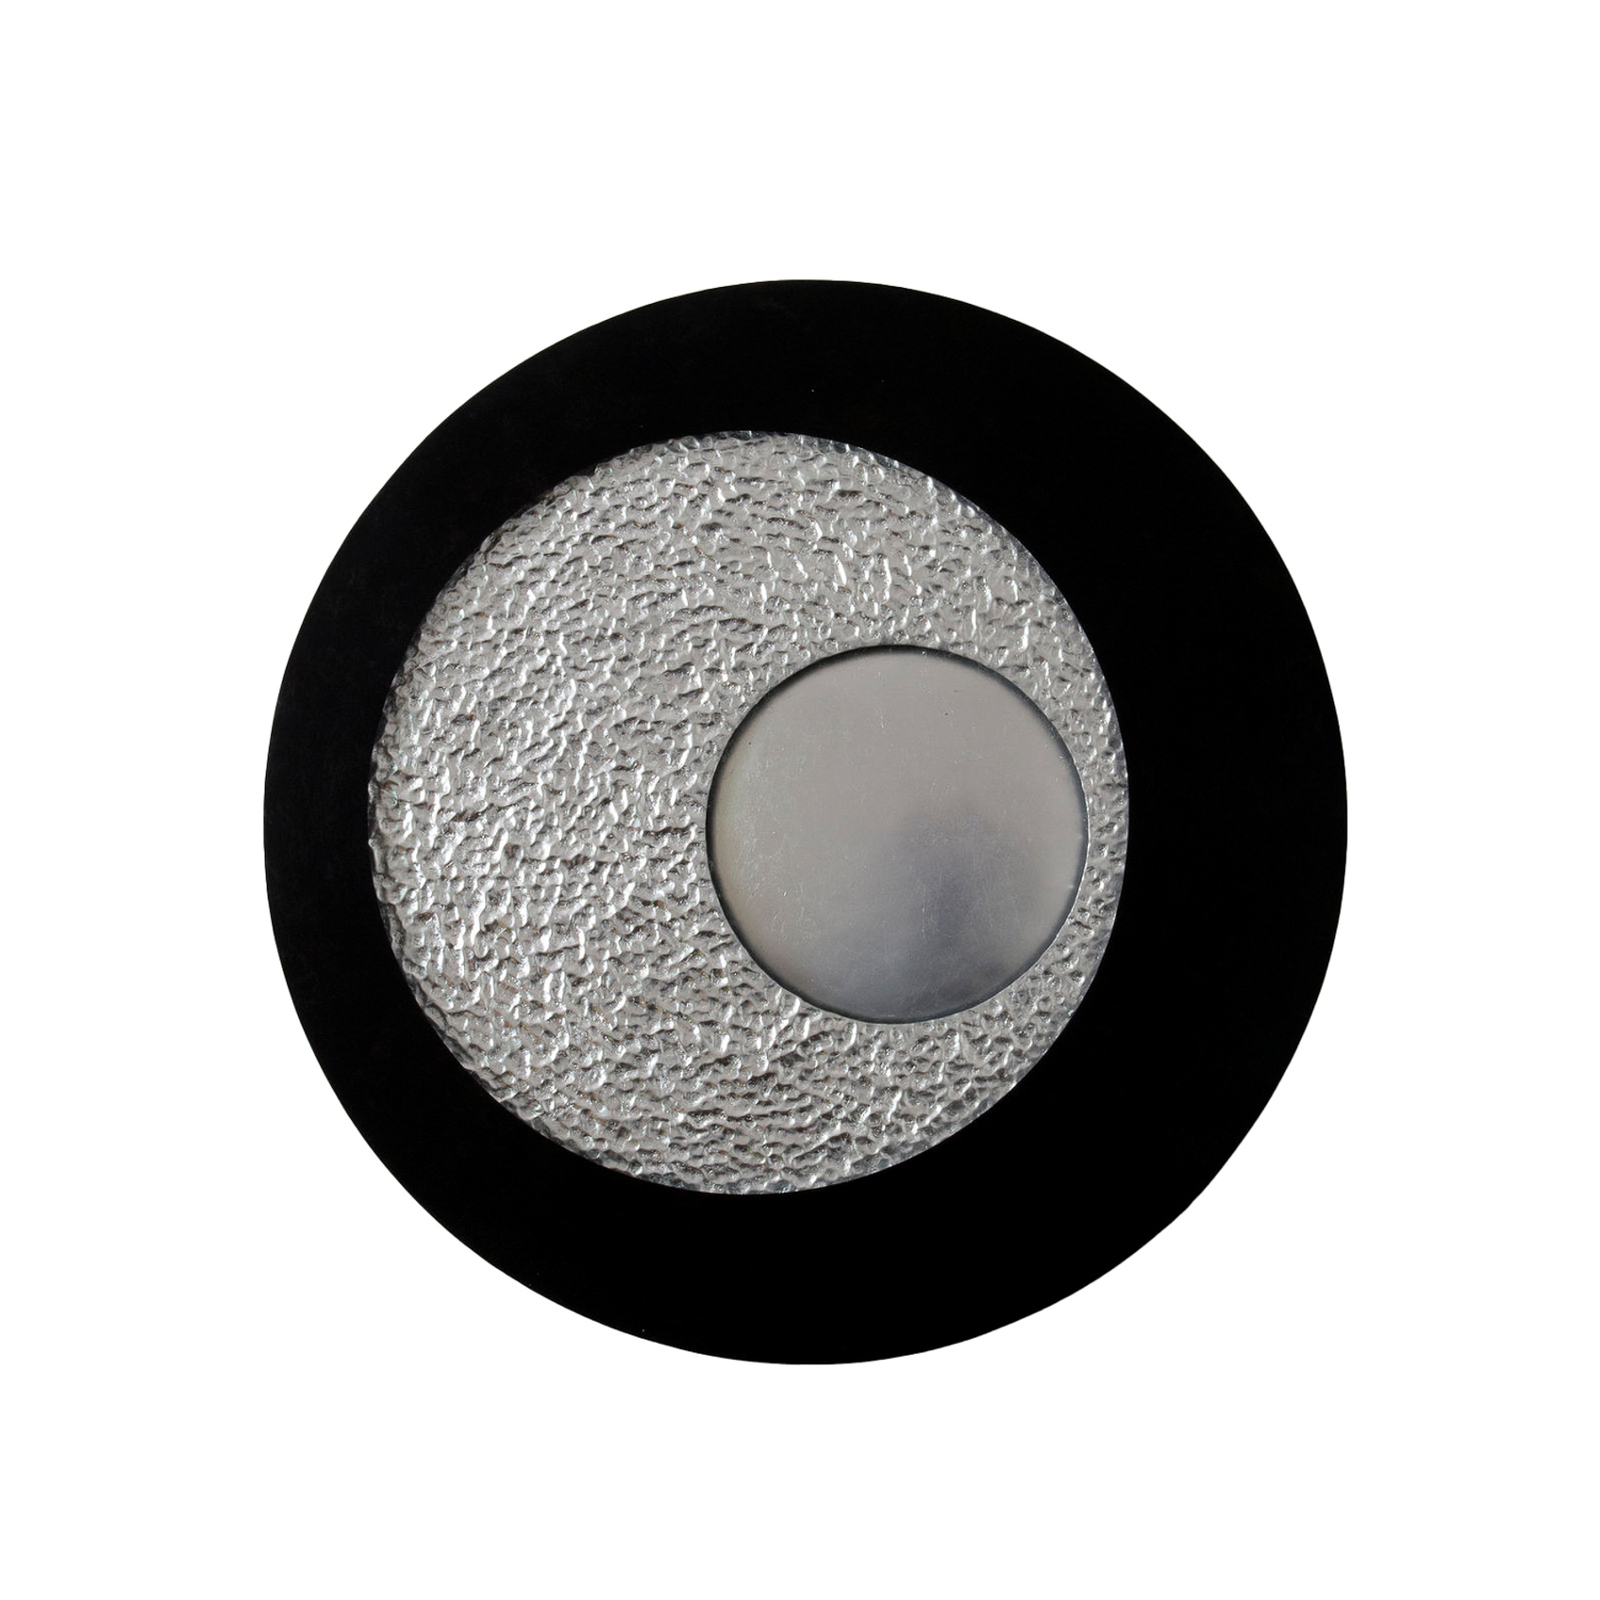 Urano LED vägglampa, brun-svart/silver, Ø 85 cm, järn